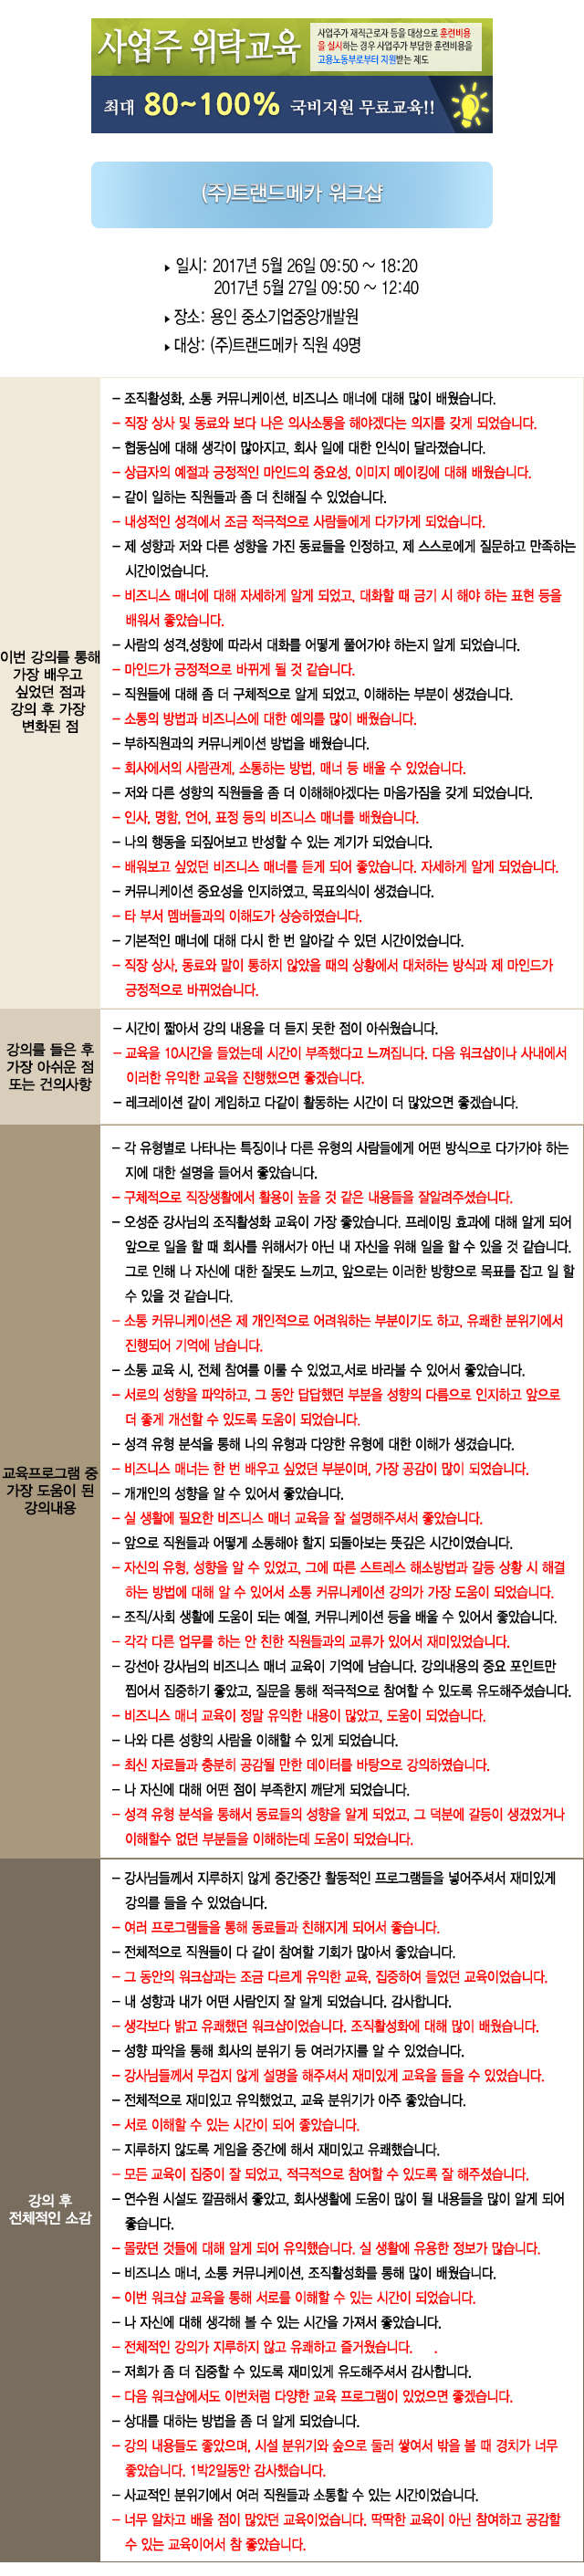 한국중앙인재개발원 후기 트랜드메카.jpg